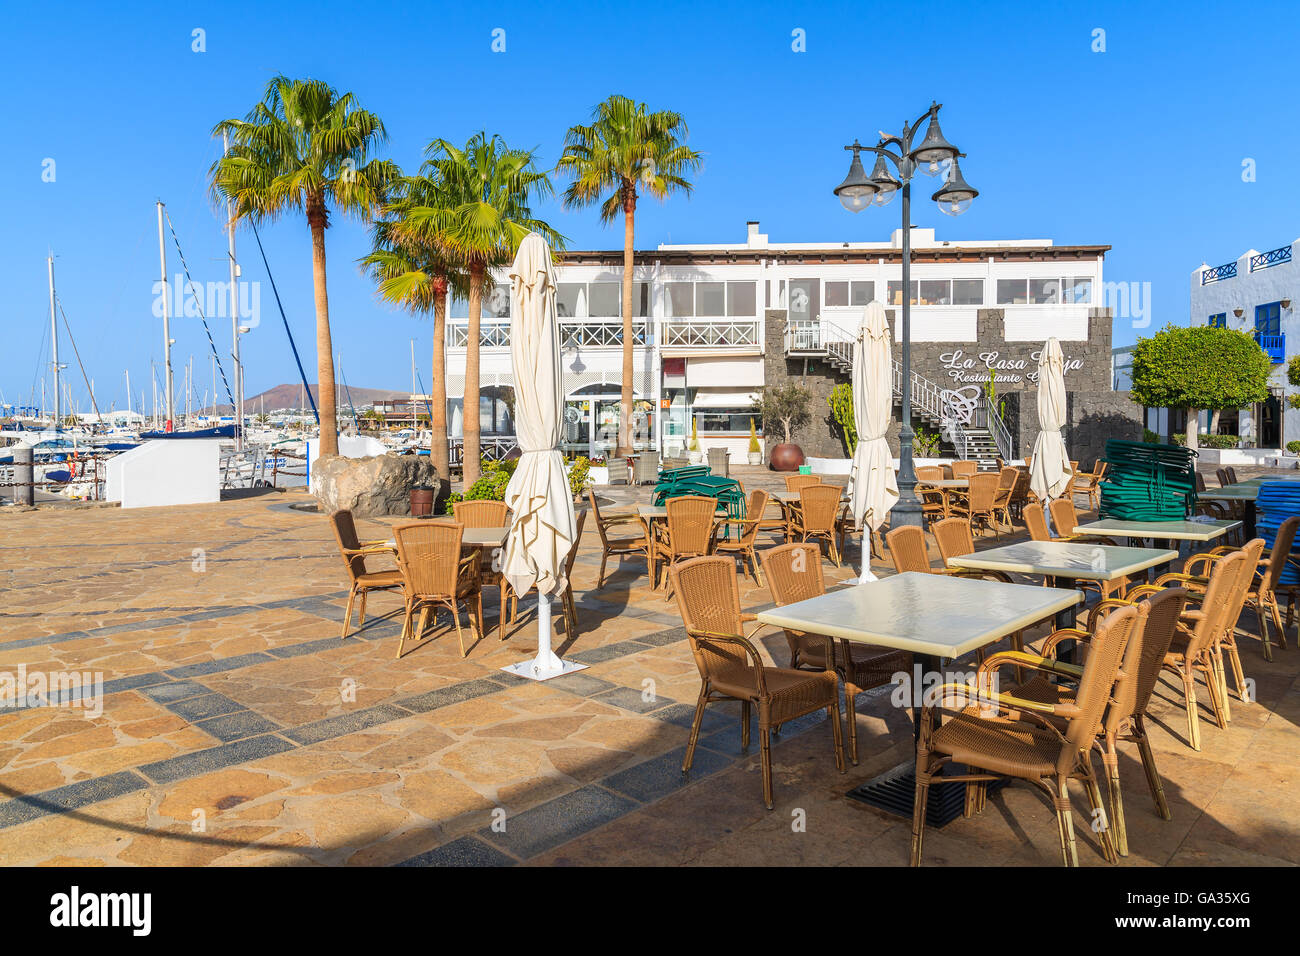 MARINA RUBICON, Insel LANZAROTE - 11. Januar 2015: Restauranttische im Rubicon Hafen Playa Blanca Stadt. Kanarischen Inseln sind ein beliebtes Urlaubsziel aufgrund der sonnigen tropischen Klima. Stockfoto